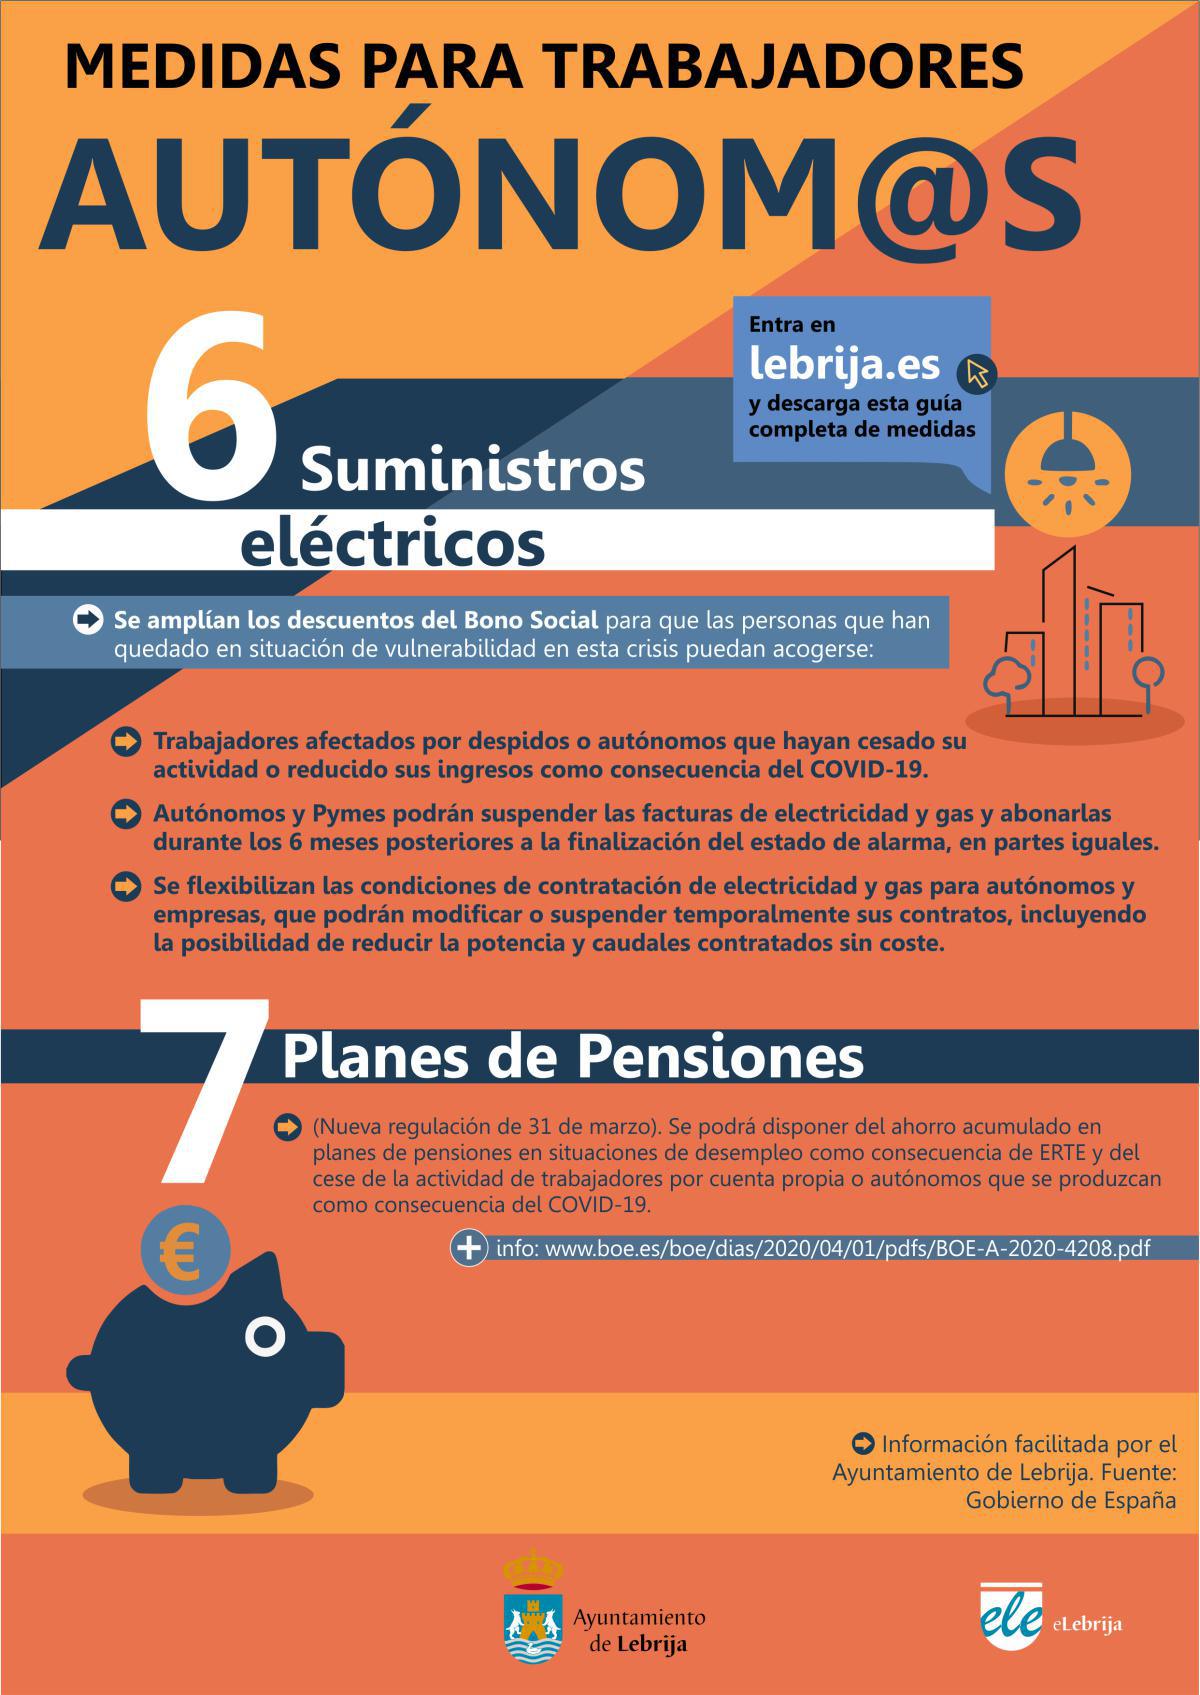 Compilación de las medidas implementadas por el Gobierno de España ante la crisis generada por el COVID-19, y orientadas a Autónomos